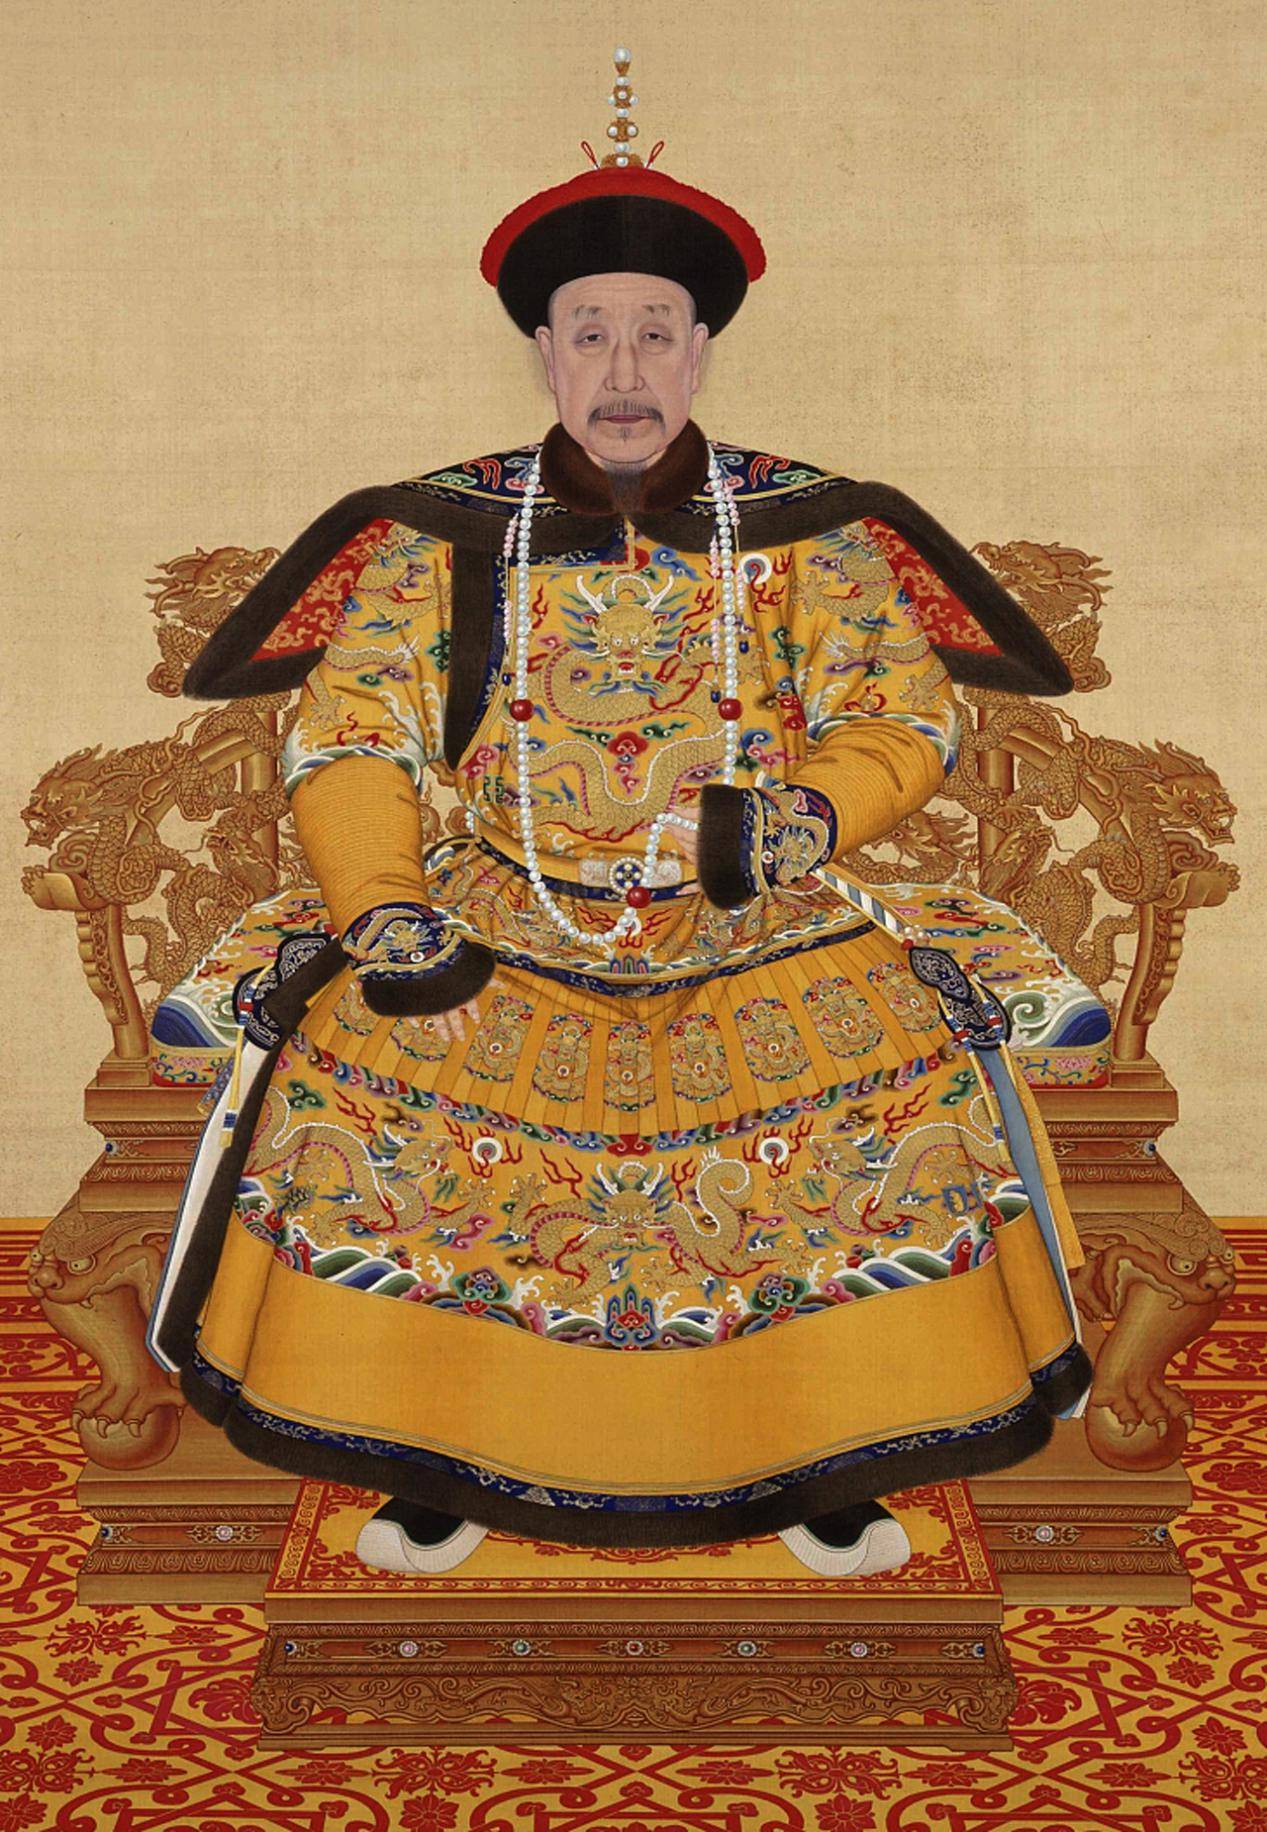 清朝雍正十三年(公元1735年)八月,雍正皇帝爱新觉罗·胤禛驾崩,其子